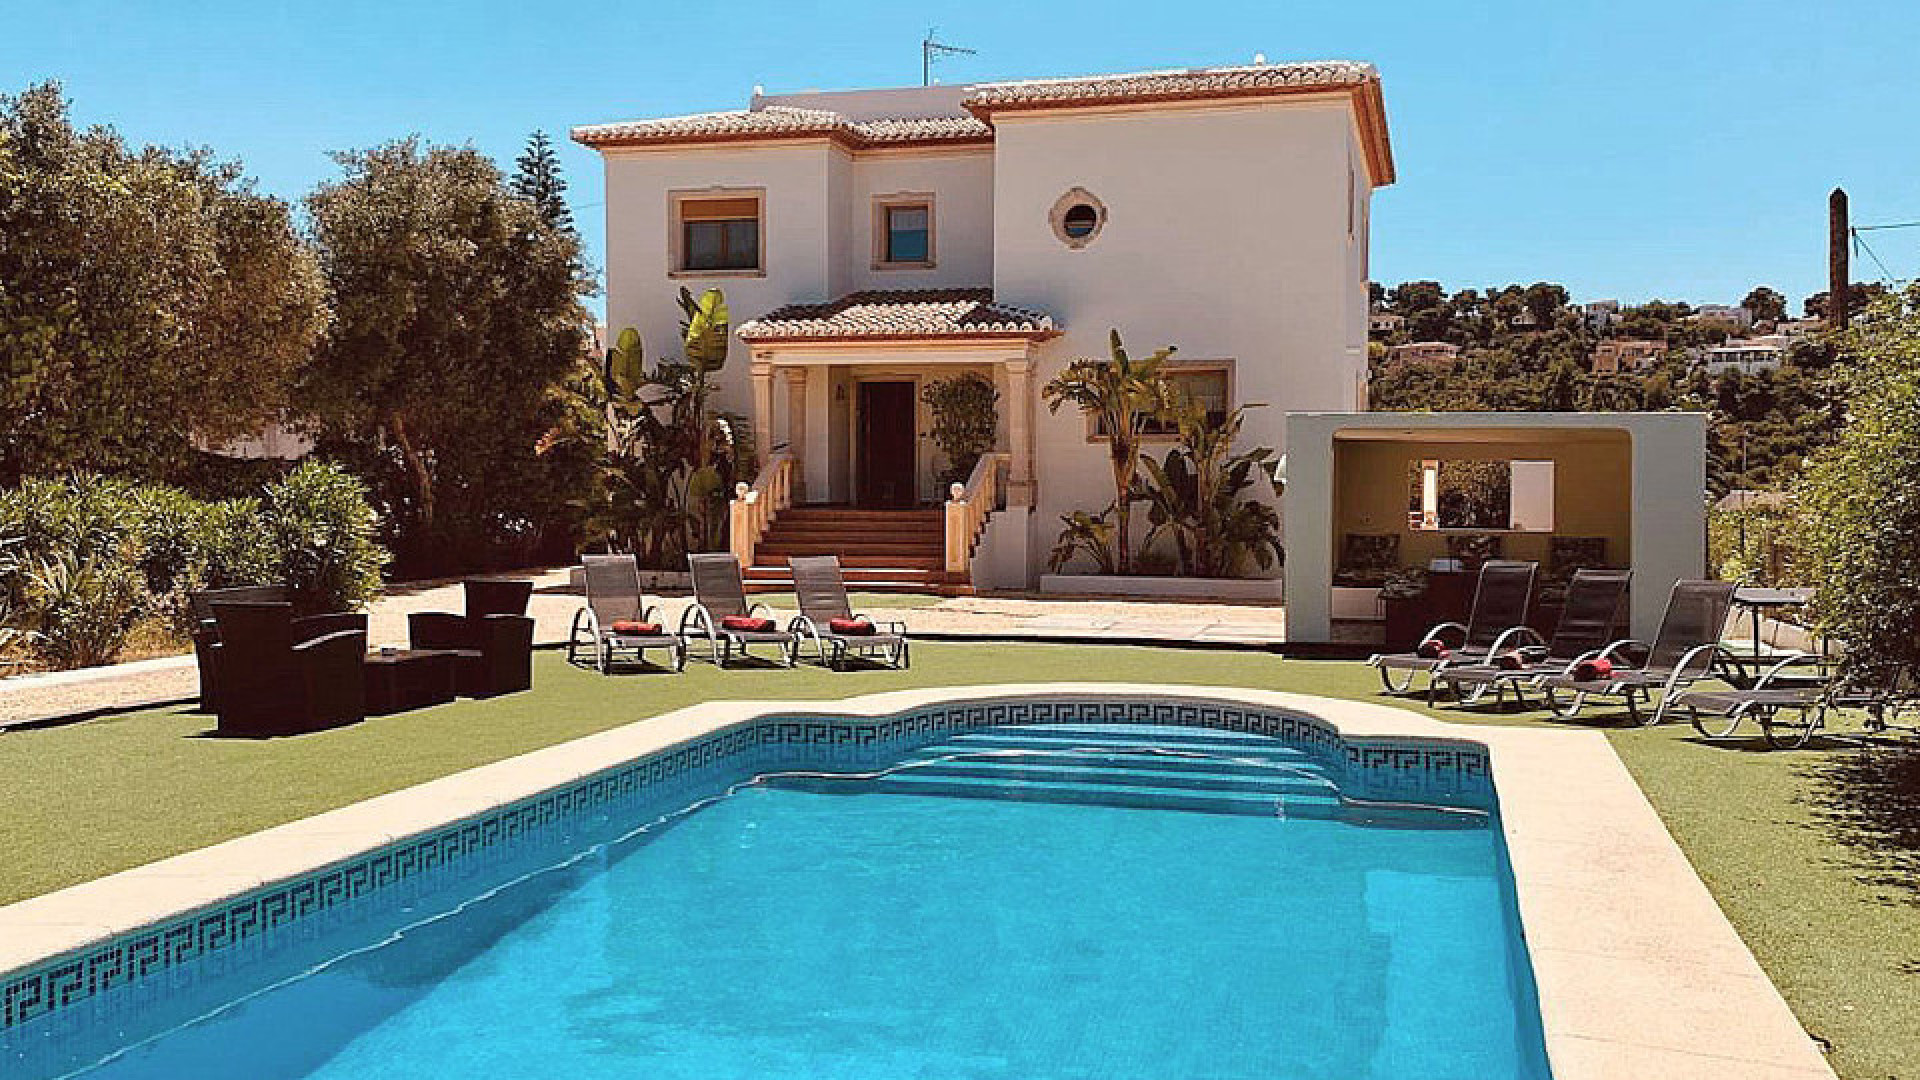 TE KOOP: Deze schitterende villa in Spanje op vijf minuten van zee en strand.